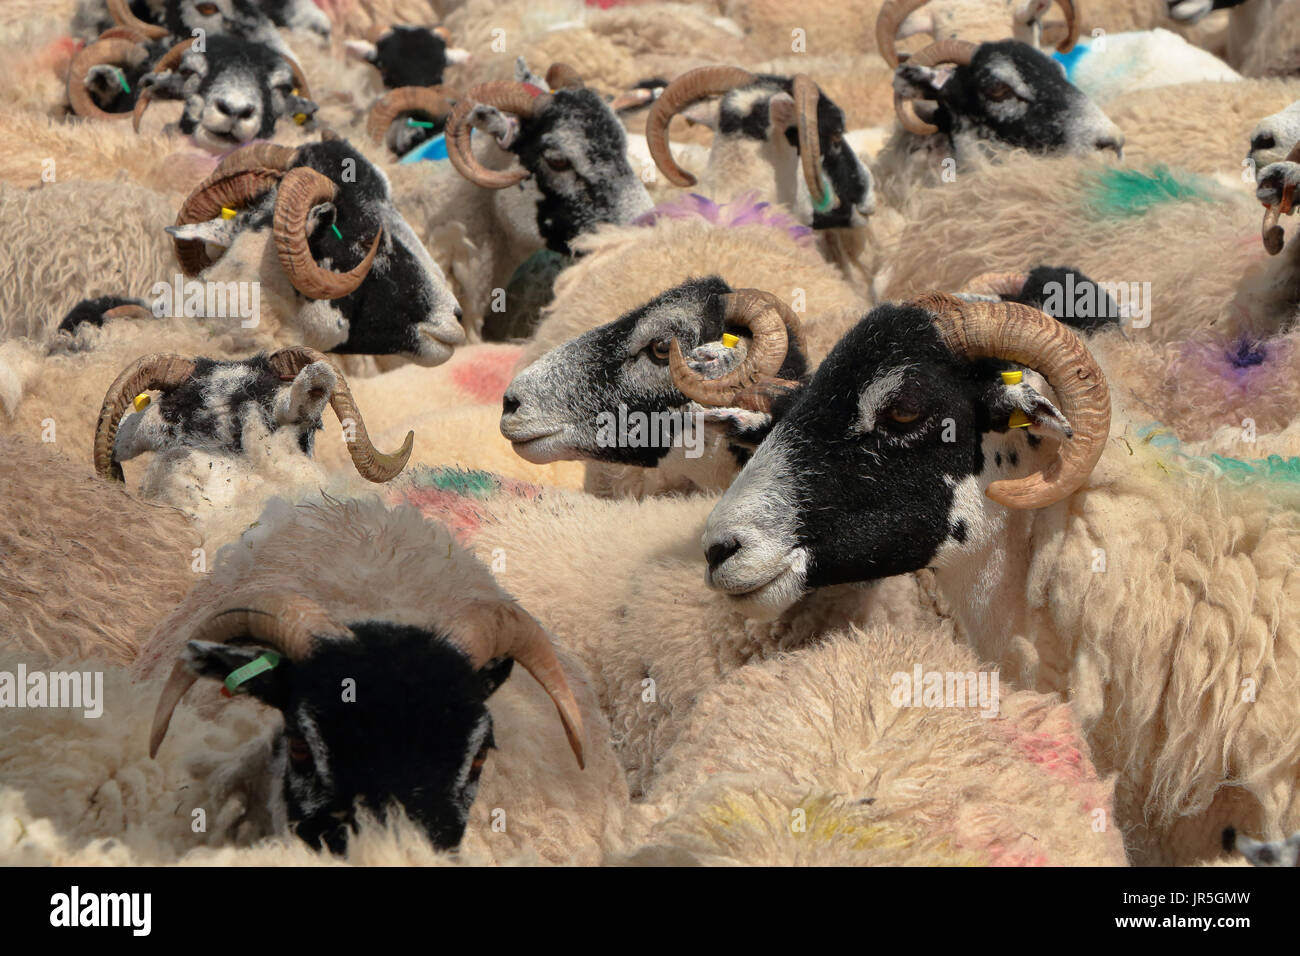 Un densly raggruppate gregge di pecore Swaledale mostra i tag all'orecchio, multi-colore di contrassegni di vernice e inciso corna Foto Stock